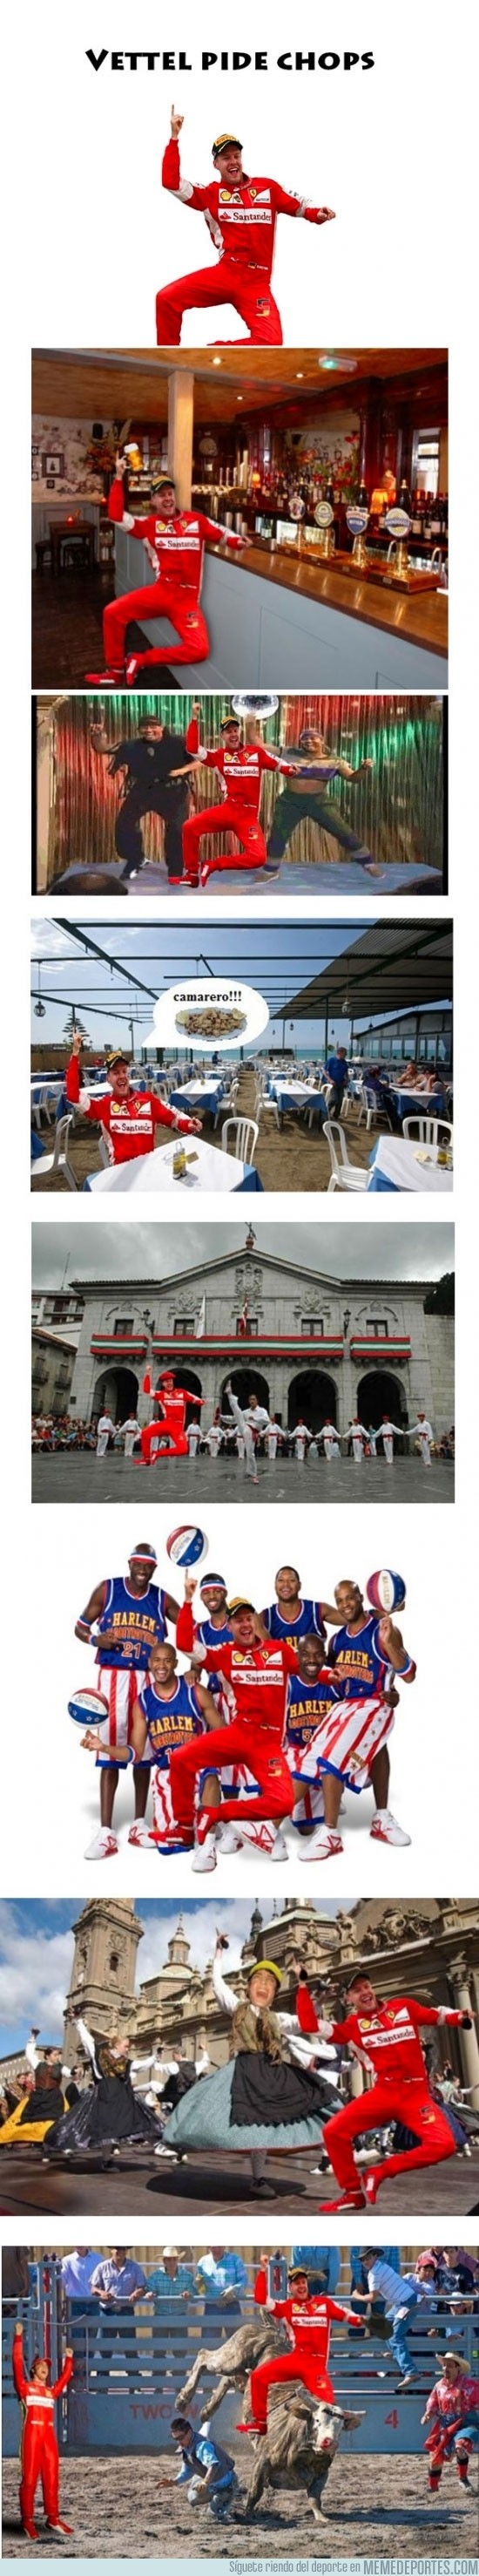 492746 - Aquí están, los chops de la celebración de Vettel con Ferrari